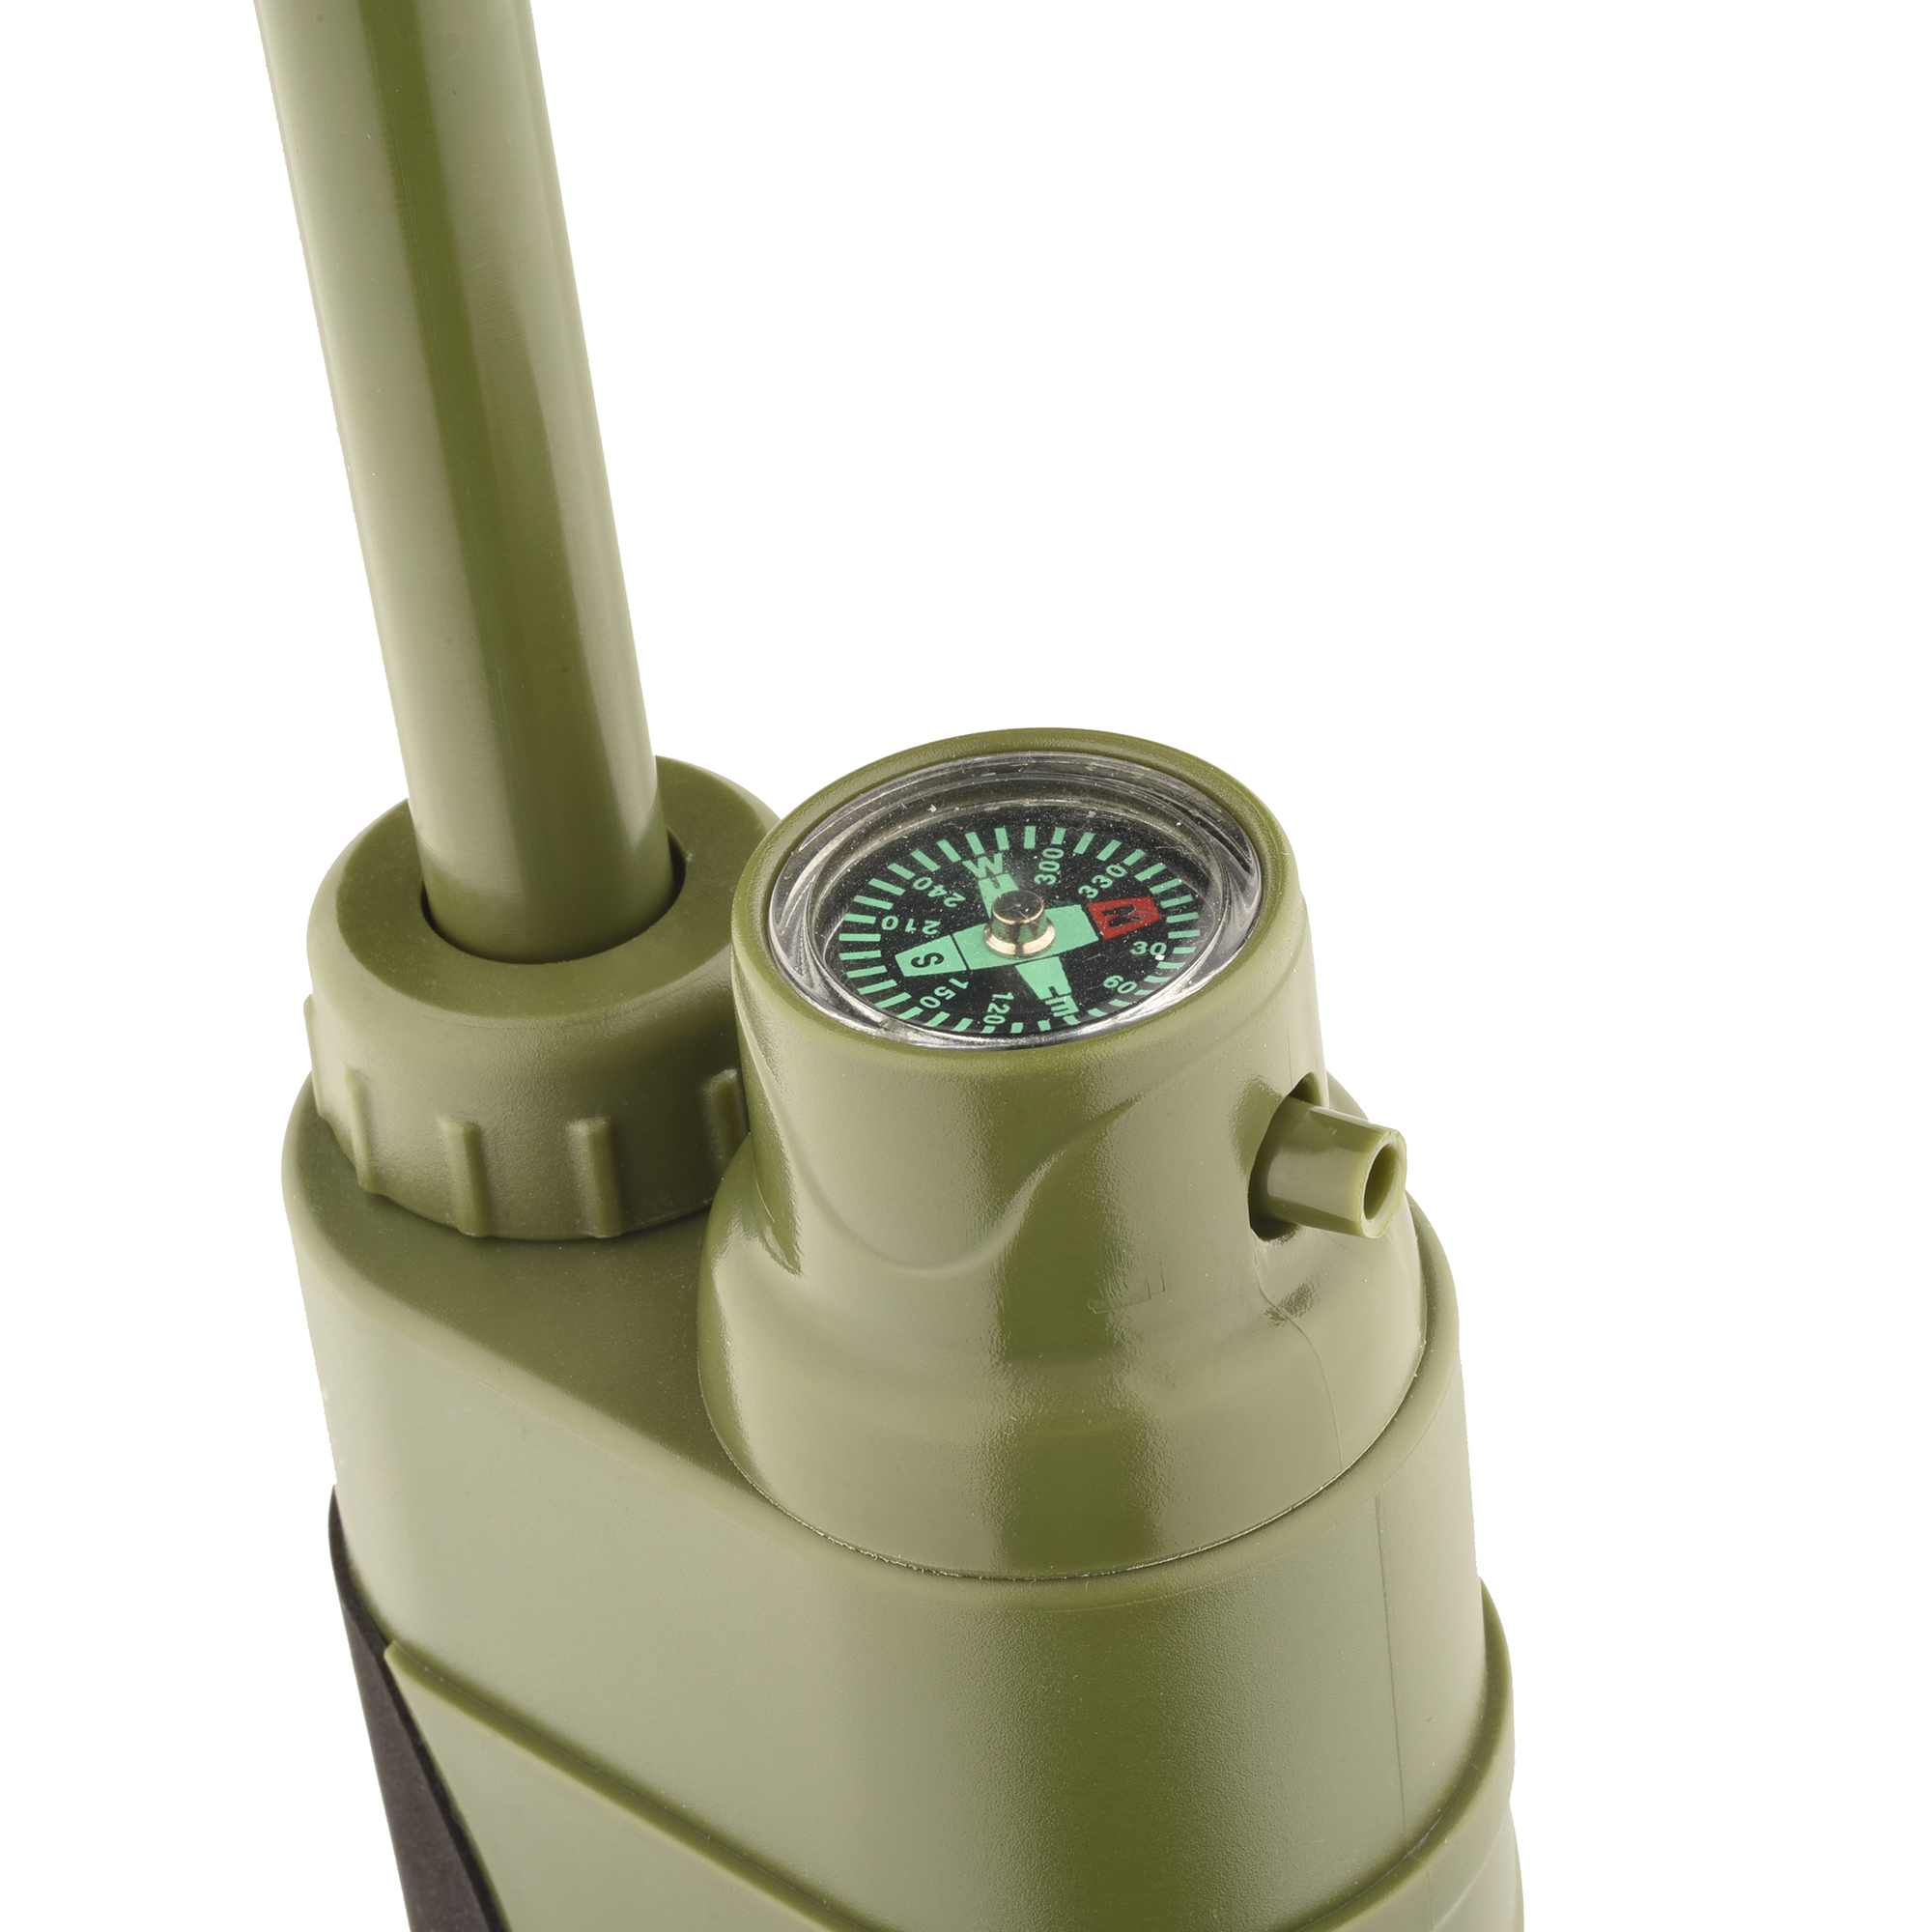 Wild Peak Outdoor Tactical Water Filter Pump